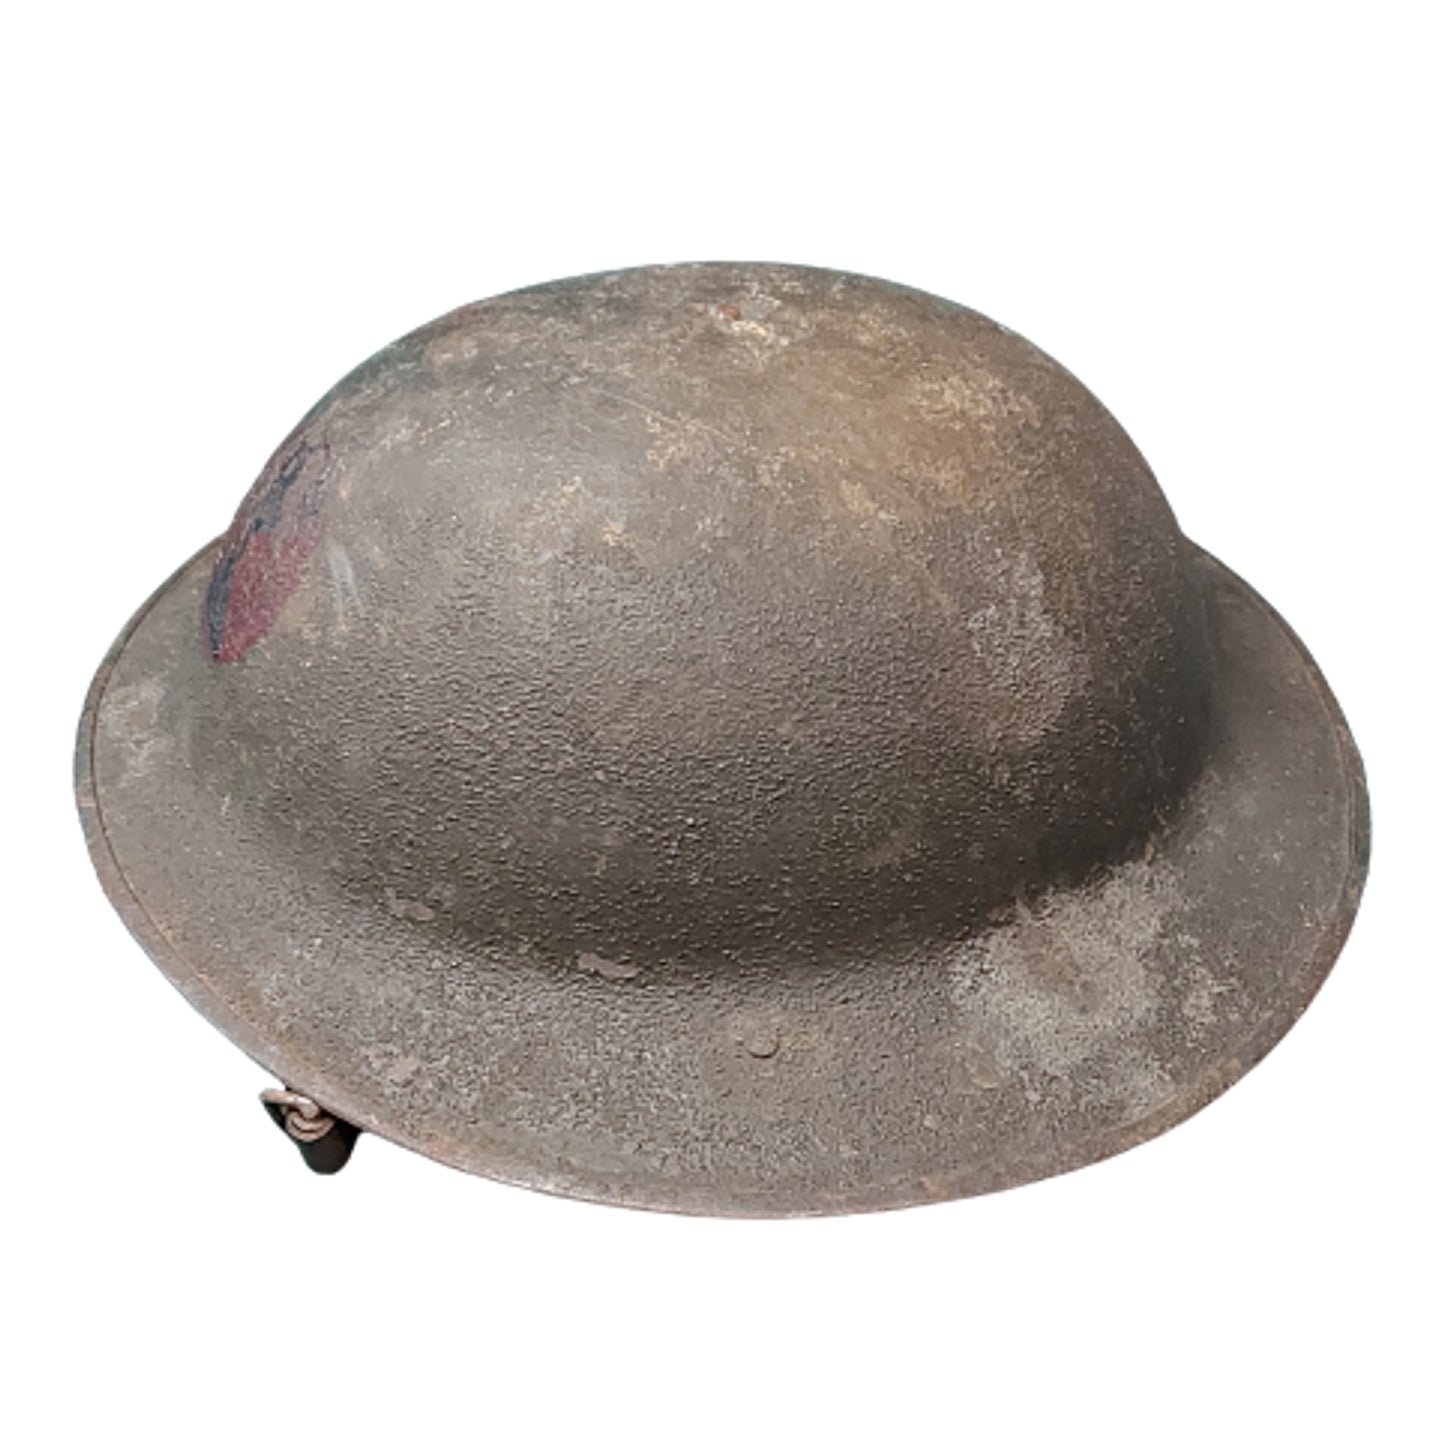 WW1 U.S. United States 7th Division Combat Helmet